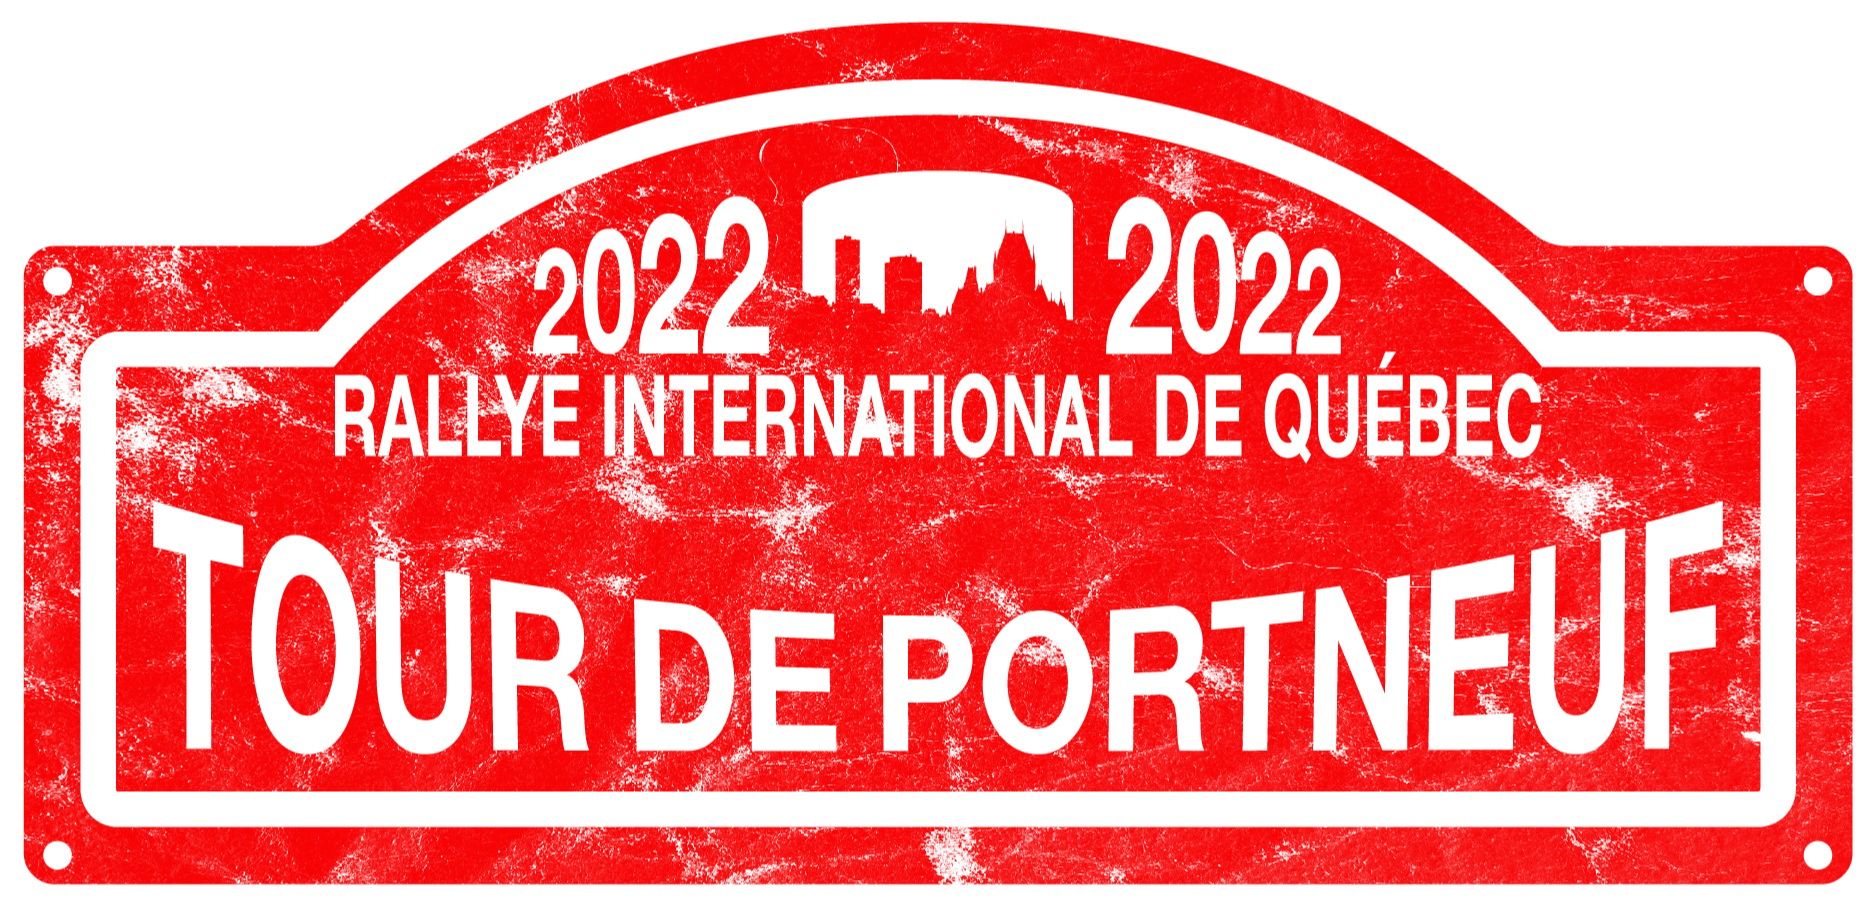 Rallye International de Quebec - Tour de Portneuf